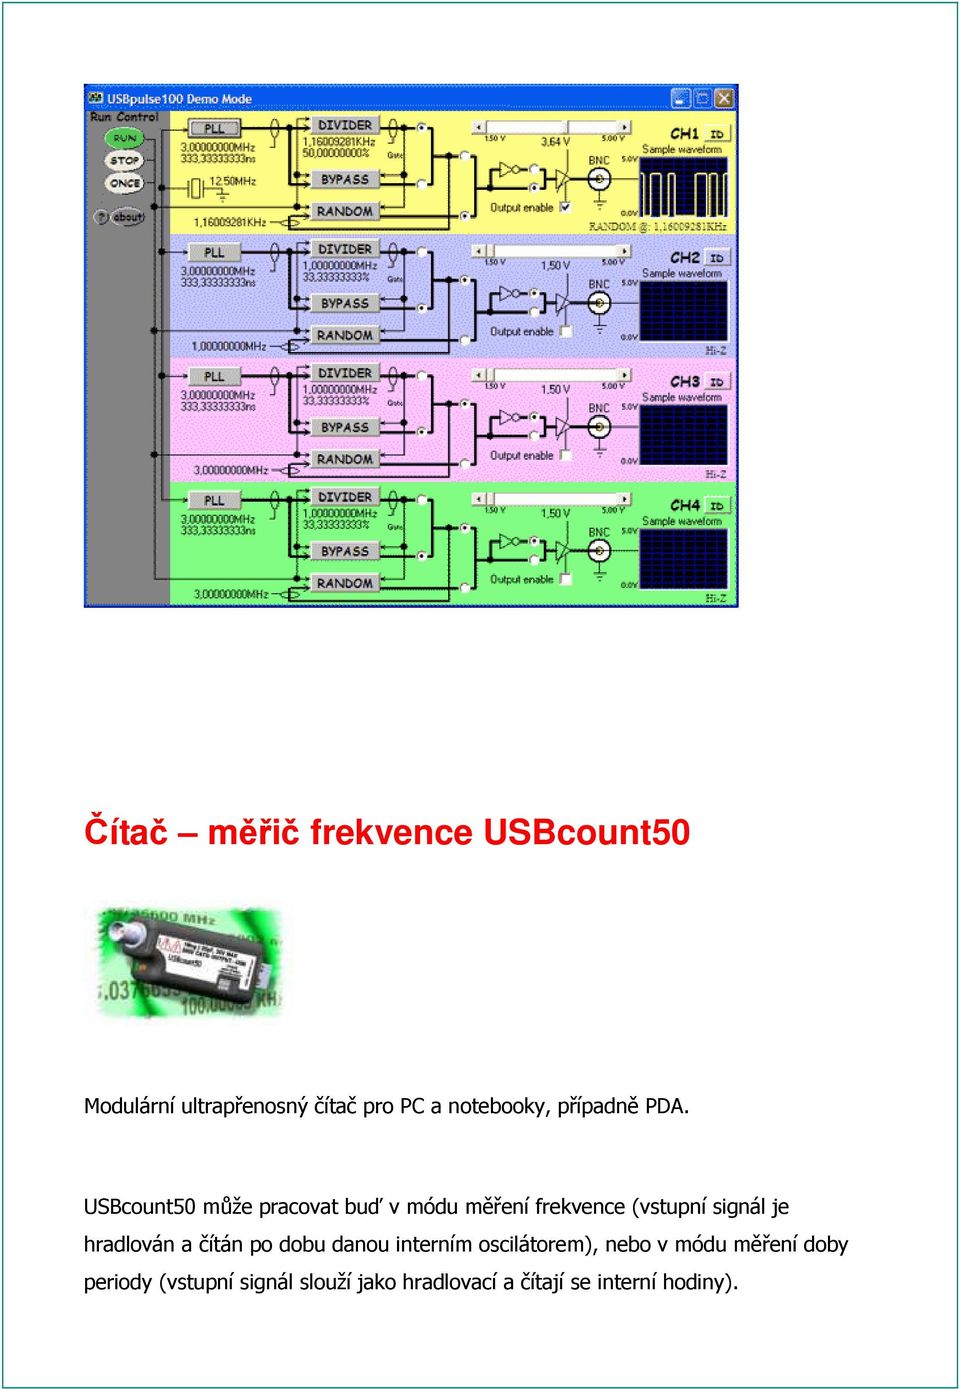 USBcount50 může pracovat buď v módu měření frekvence (vstupní signál je